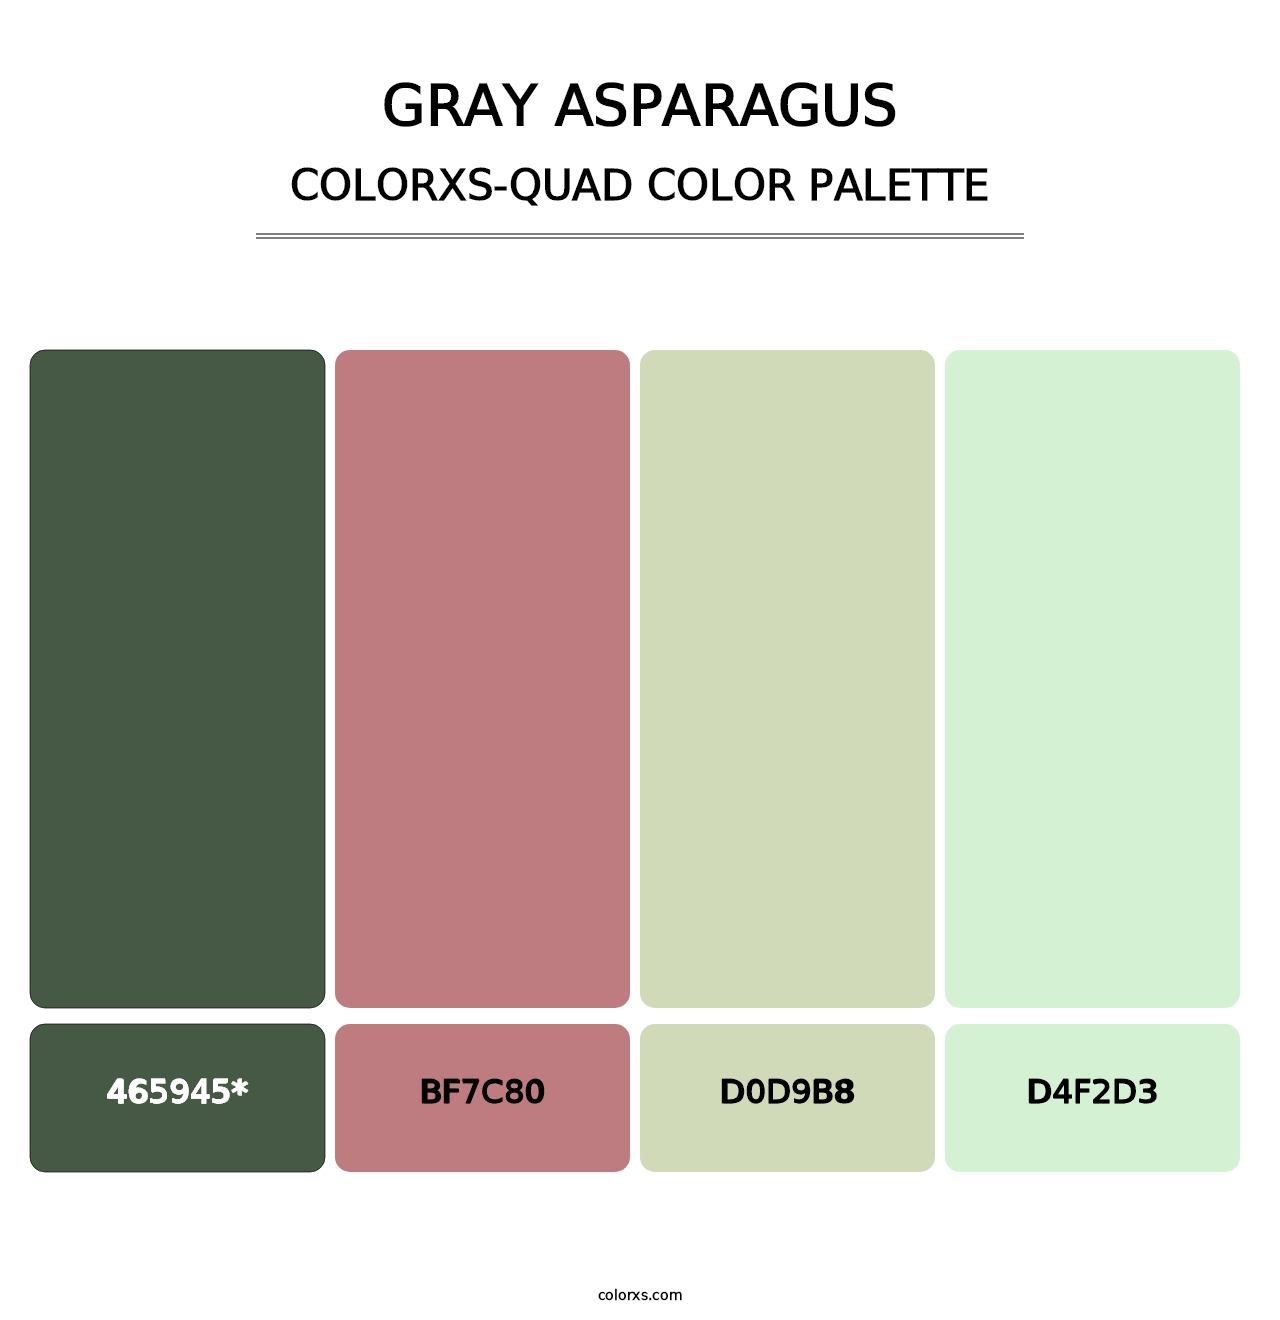 Gray Asparagus - Colorxs Quad Palette